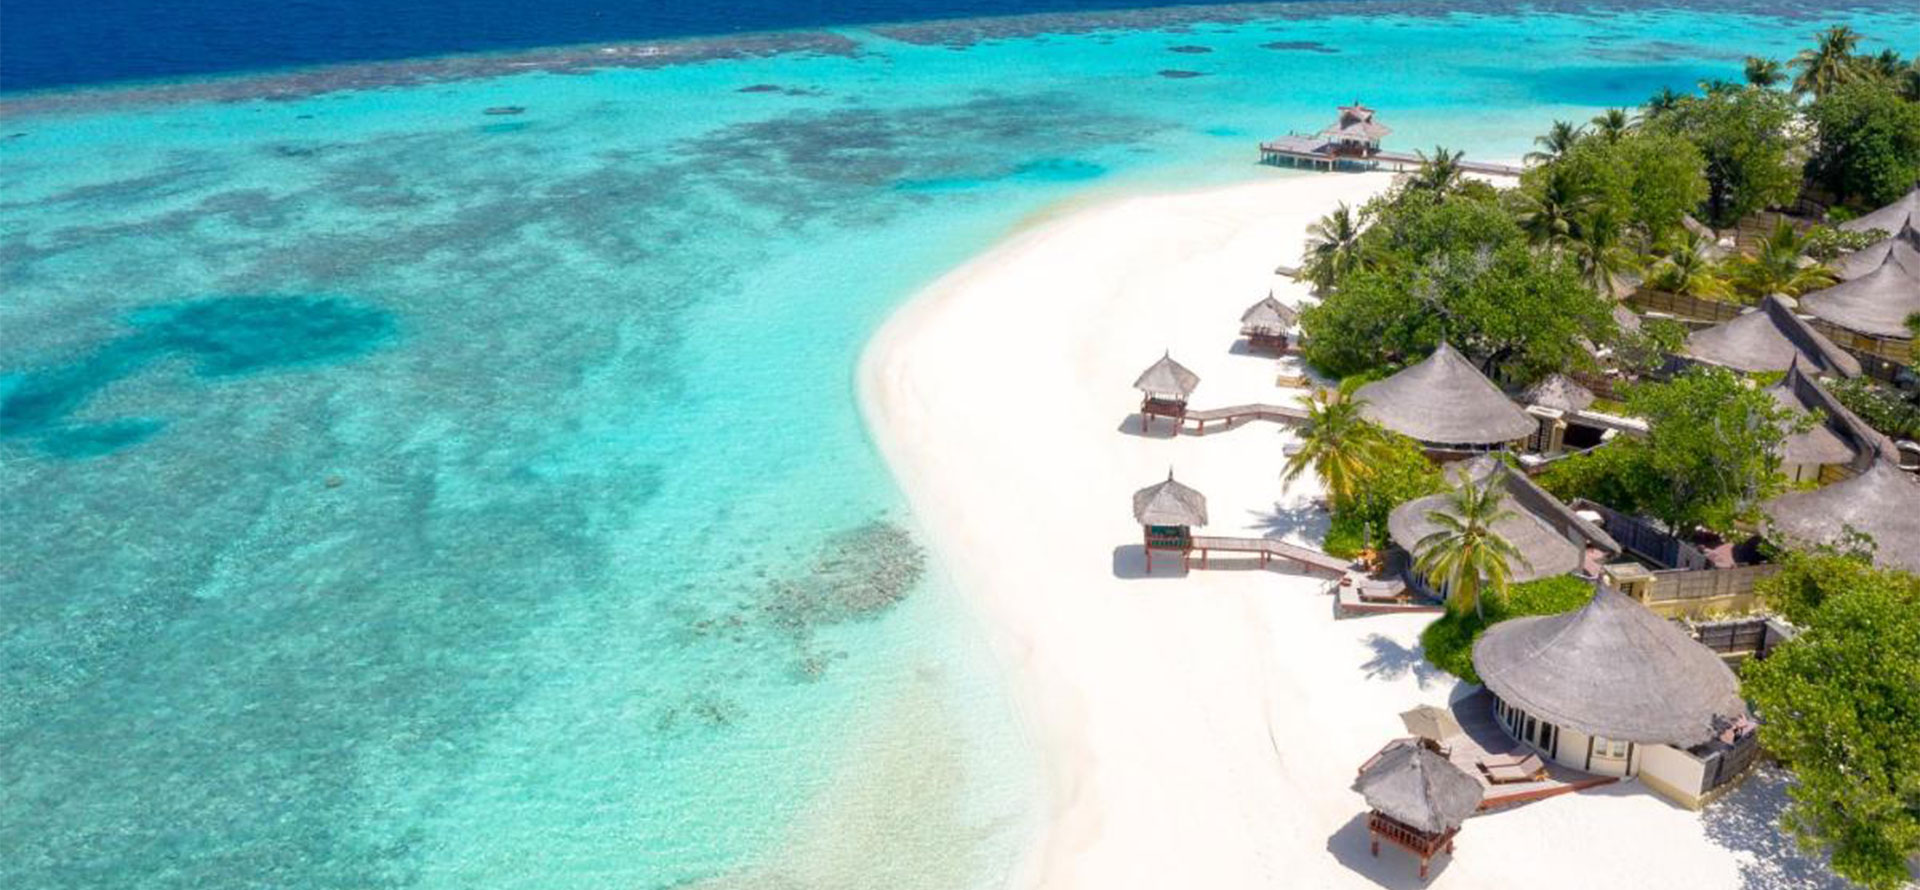 Maldives landscape view.